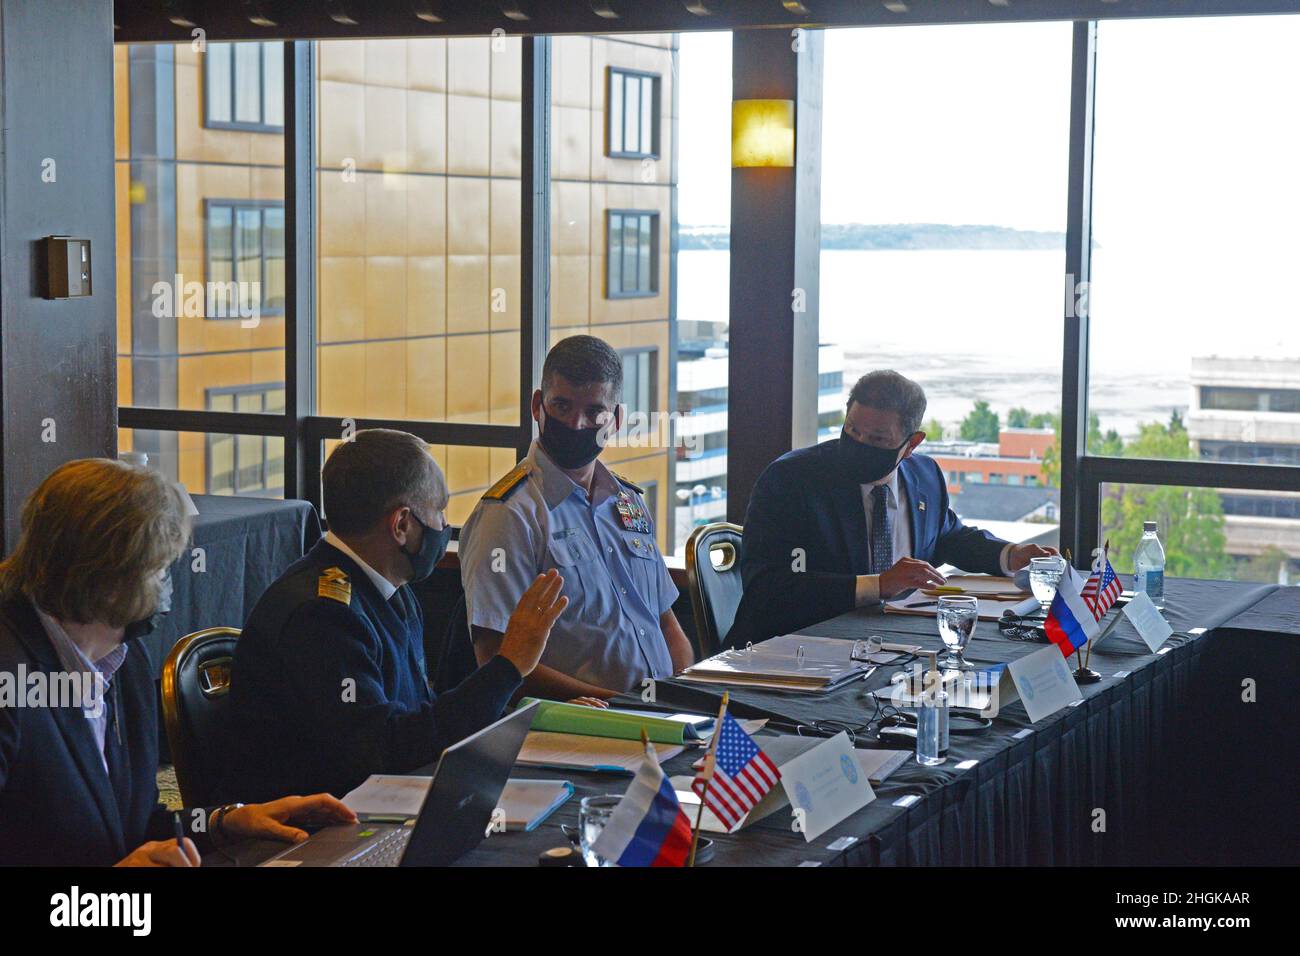 ADM. ArrièreNathan A. Moore, commandant du dix-septième district de la Garde côtière, discute des plans avec M. Petr Gerasun, directeur adjoint du Service de sauvetage maritime de la Fédération de Russie, lors de la réunion du Groupe de planification mixte de 43rd à l'hôtel Captain Cook à Anchorage, en Alaska, le 1 septembre 2021.Des membres de la Garde côtière des États-Unis et de la délégation de la Fédération de Russie ont participé à la réunion du Groupe mixte de planification de 43rd sur la préparation et la coopération en matière de lutte contre la pollution dans la mer de Béring et la mer de Chukchi. Banque D'Images